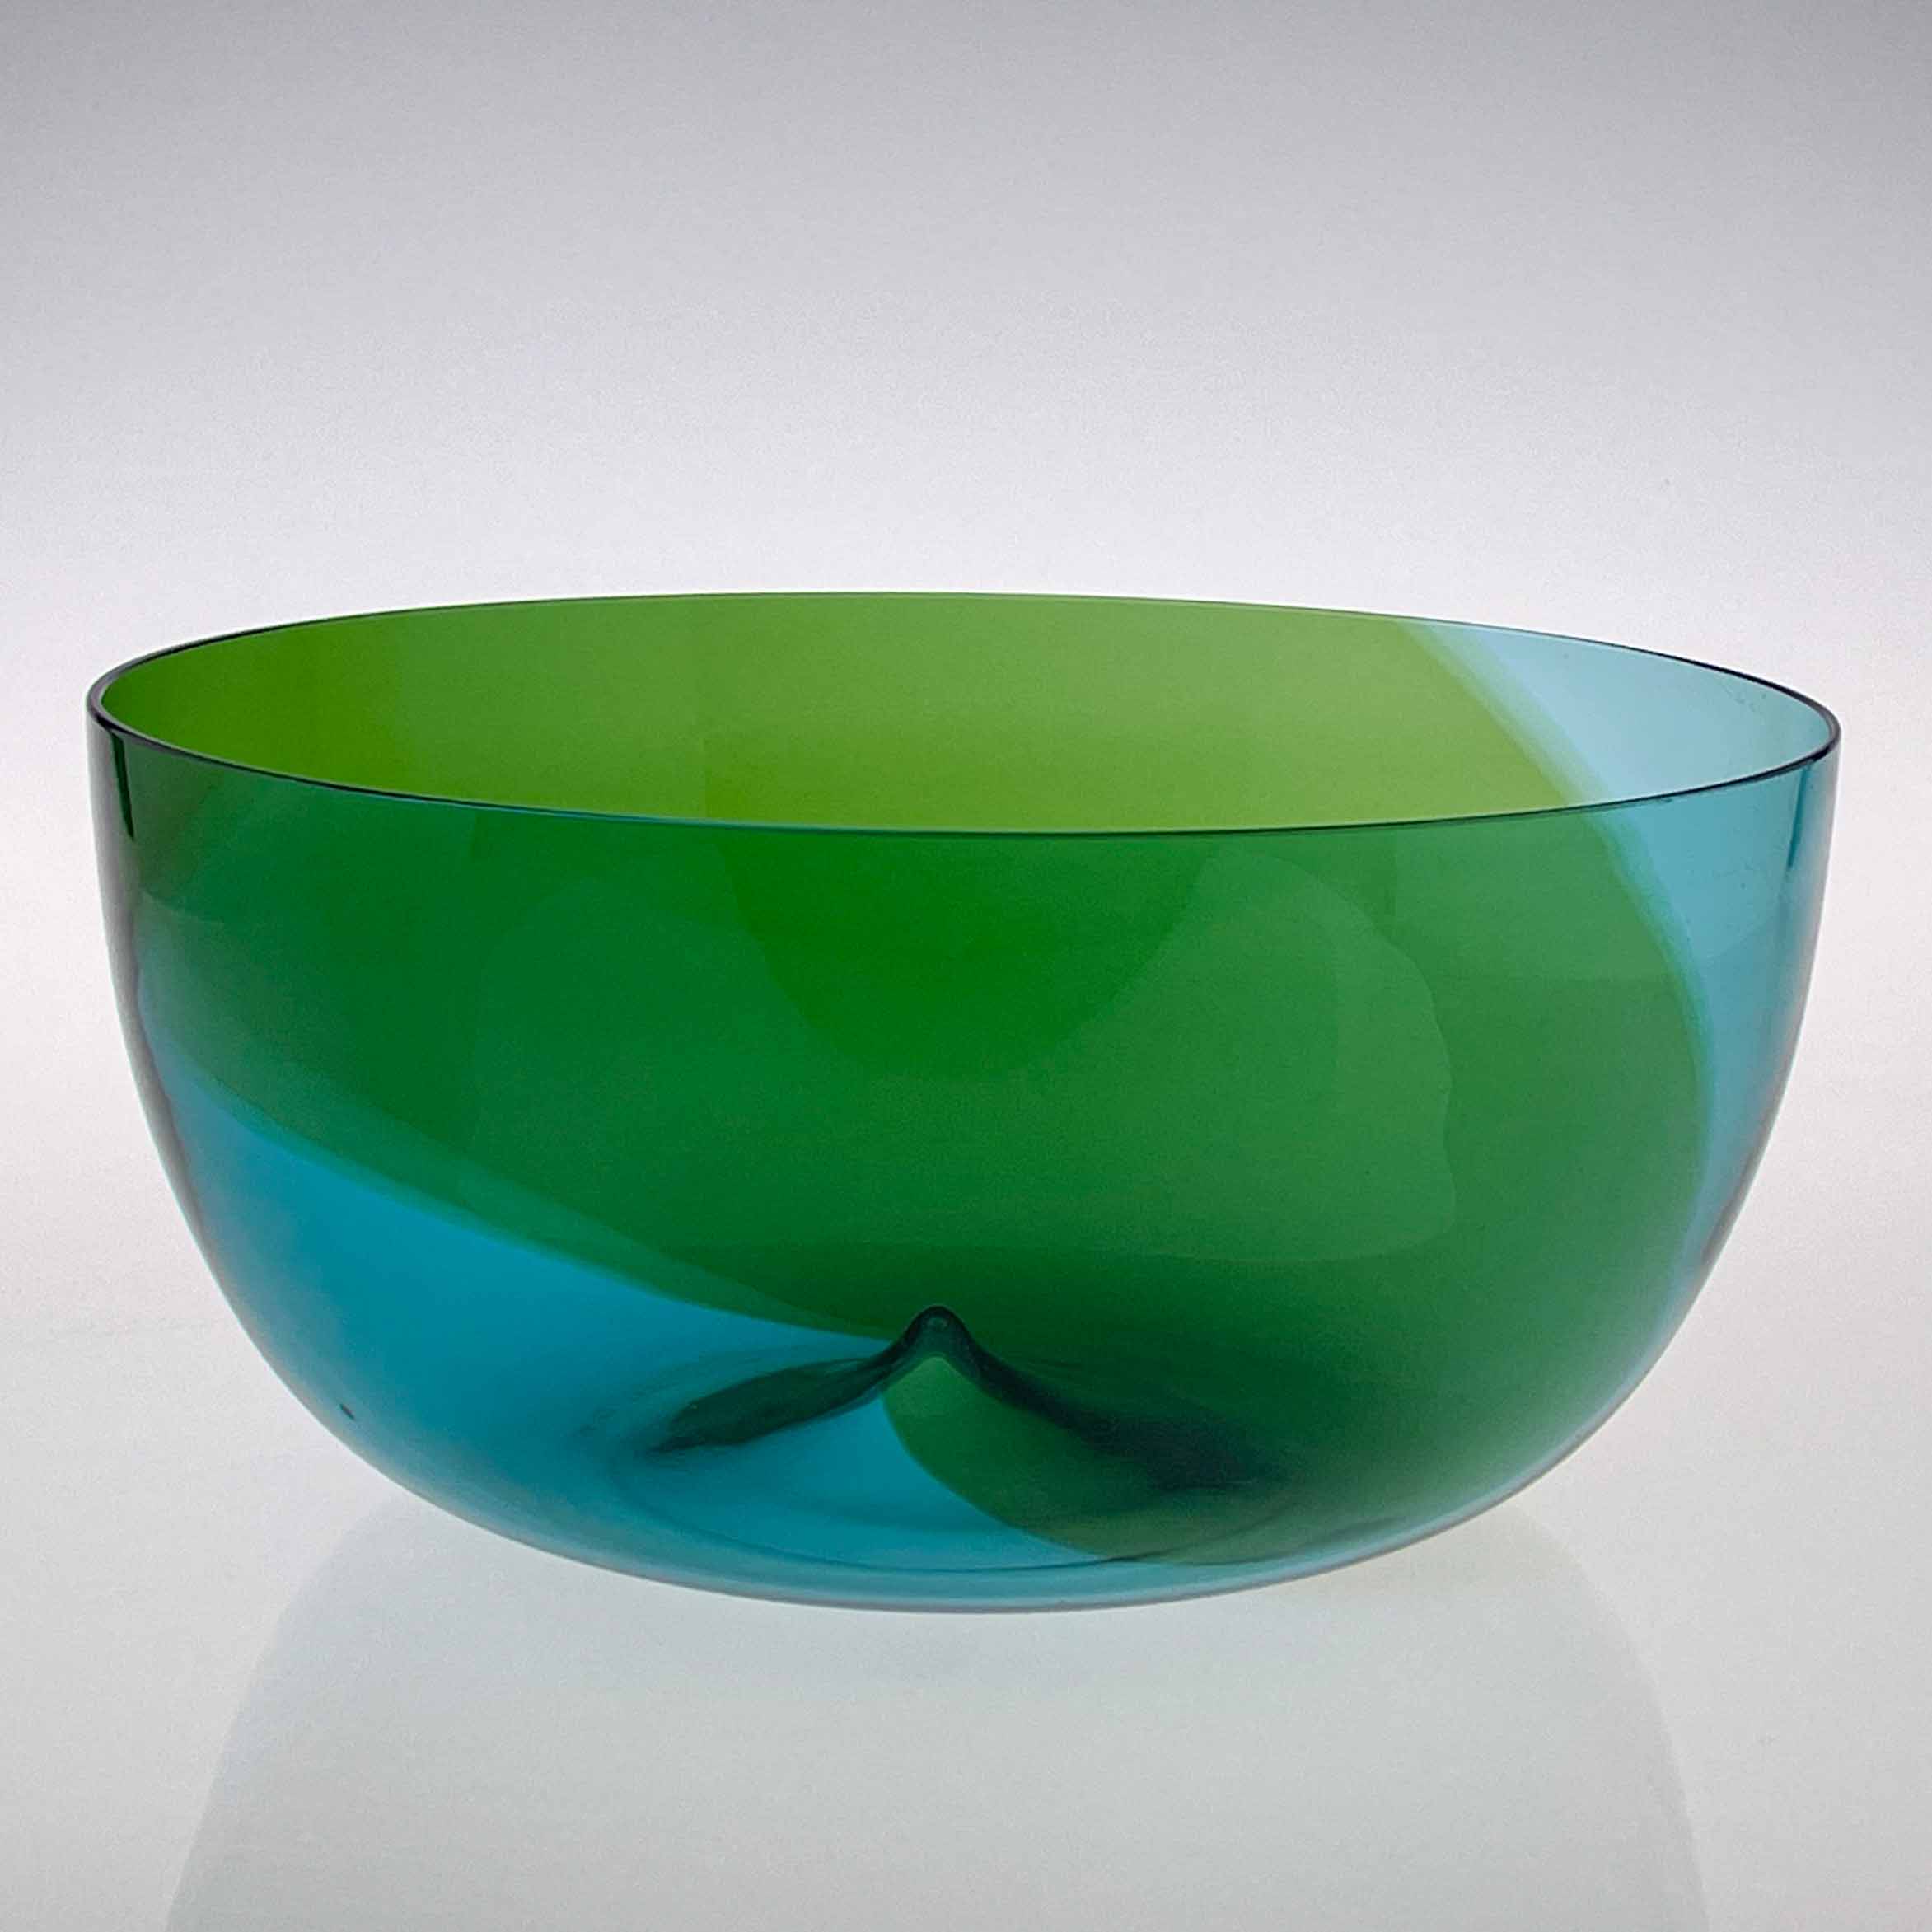 Tapio Wirkkala - Glass art-object "Coreano", model 504.4 - Venini, Italy 1984